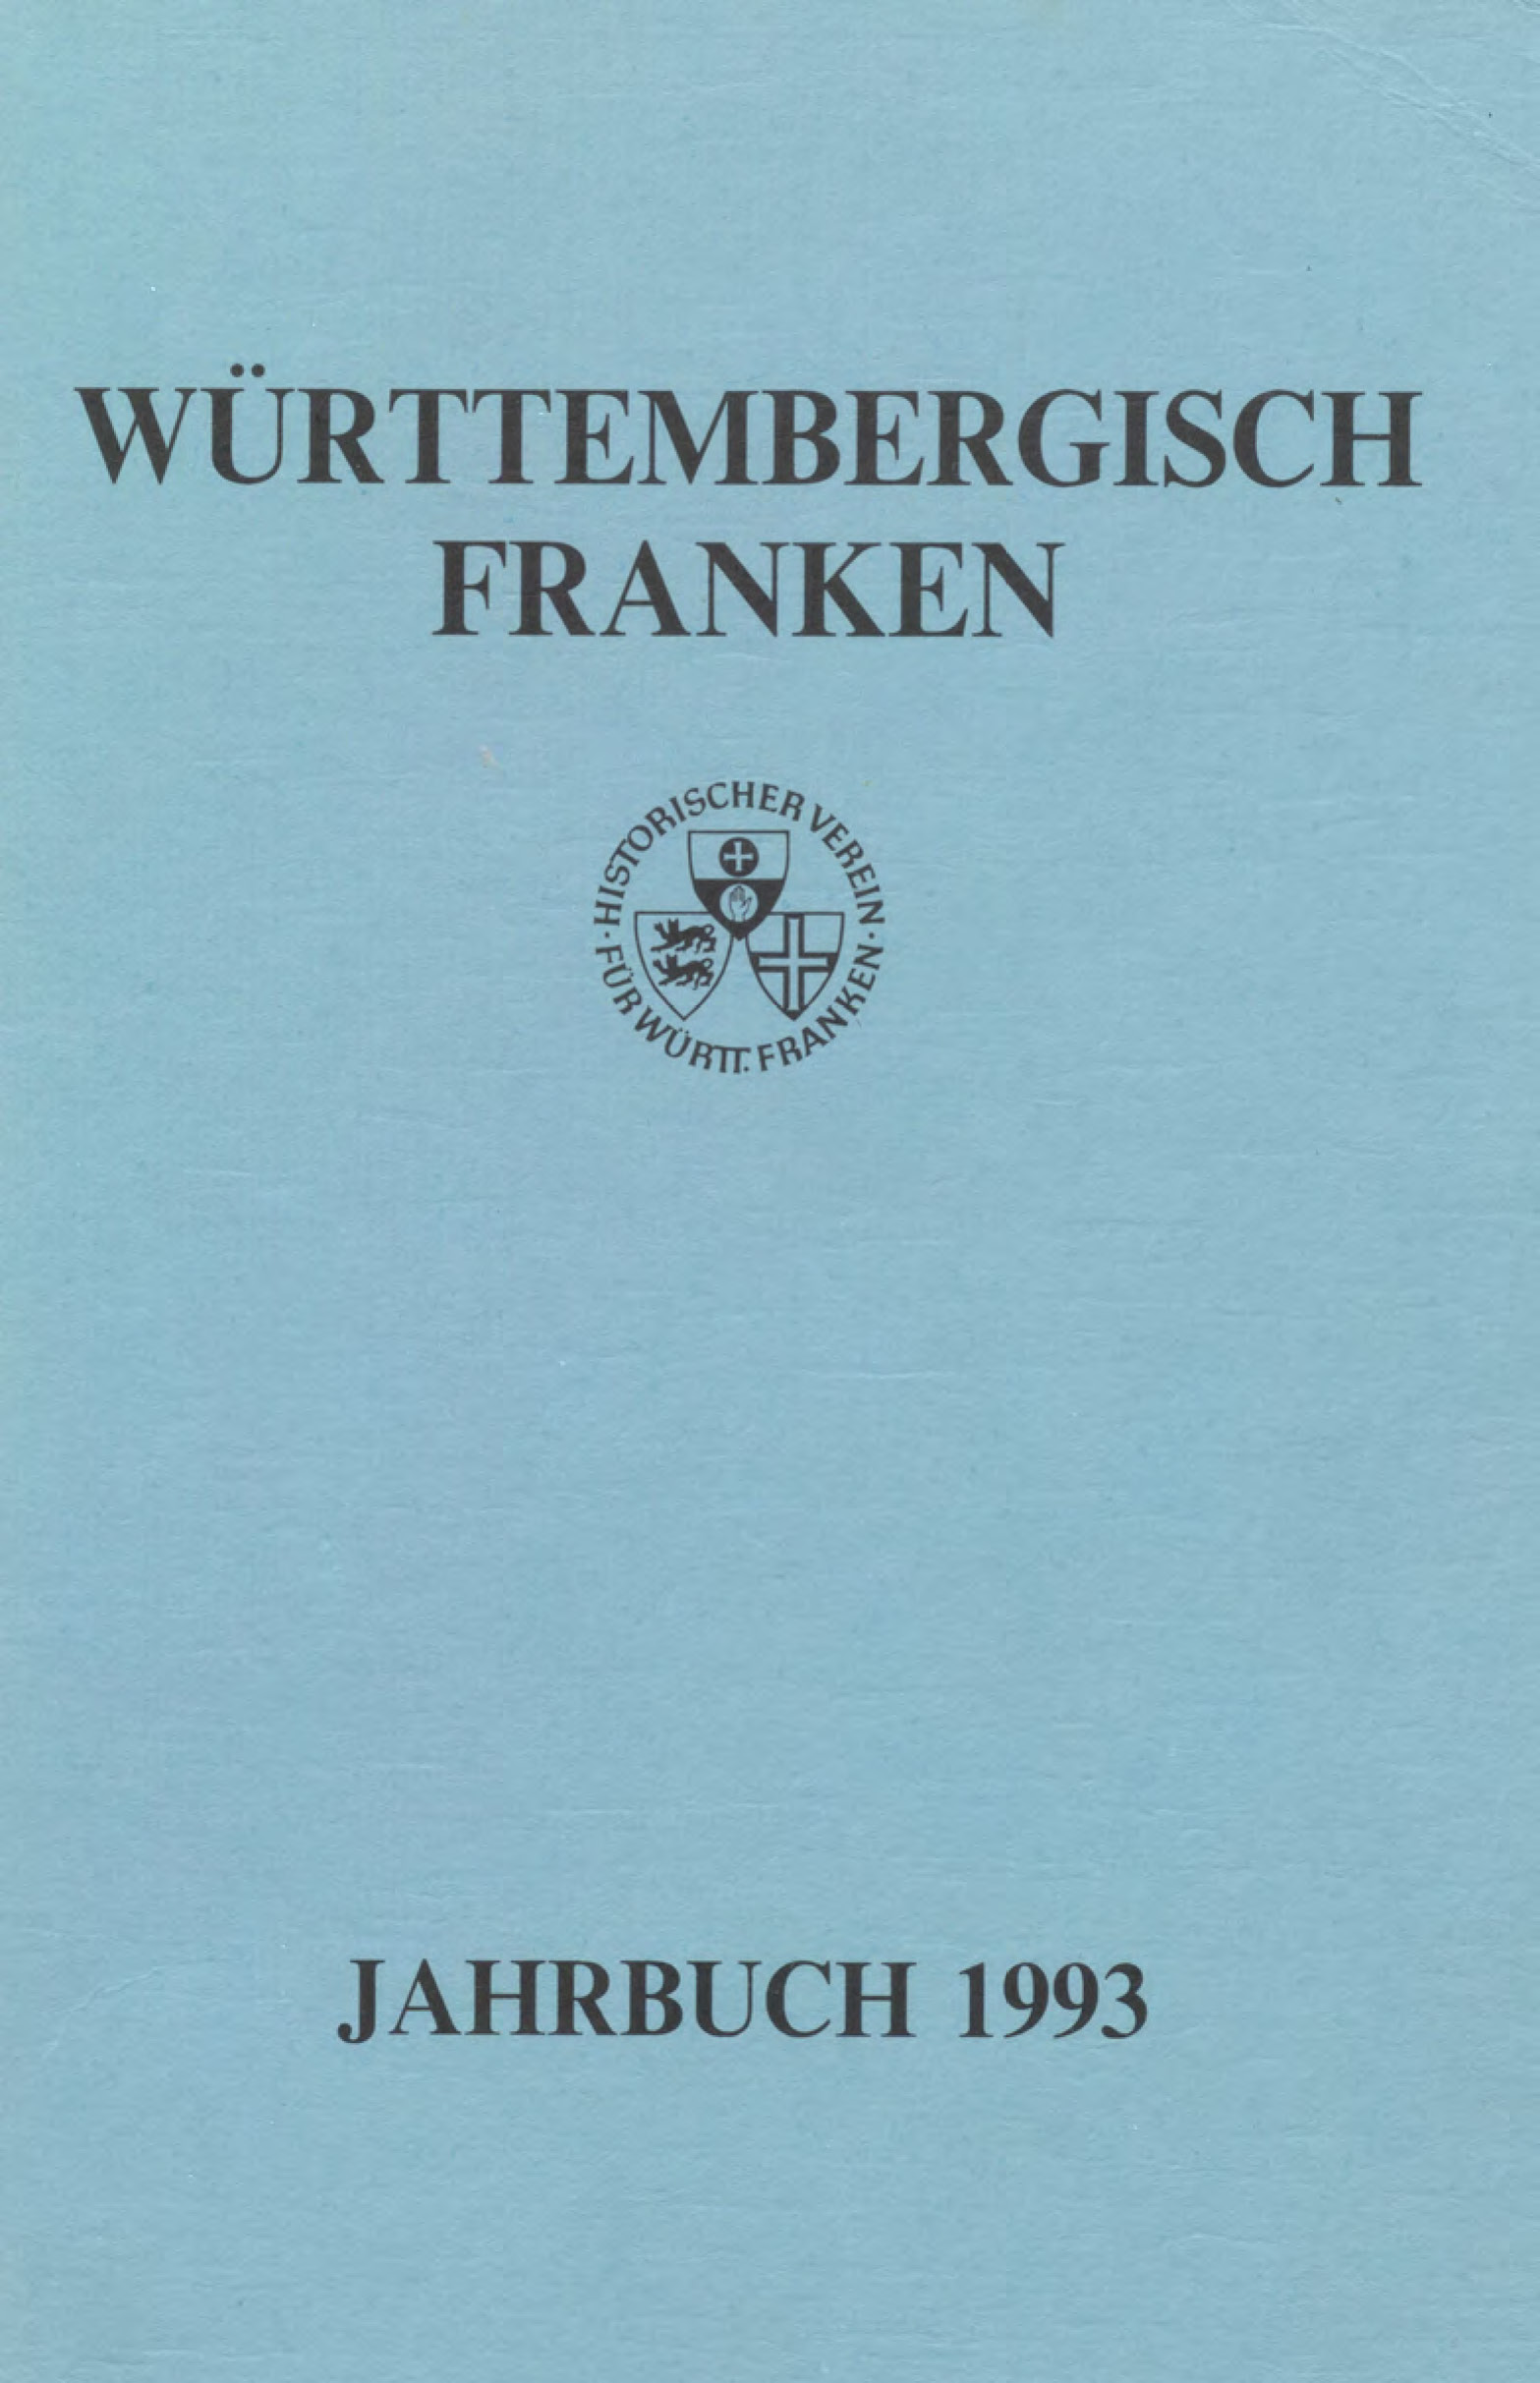                     Ansehen Bd. 77 (1993): Württembergisch Franken
                